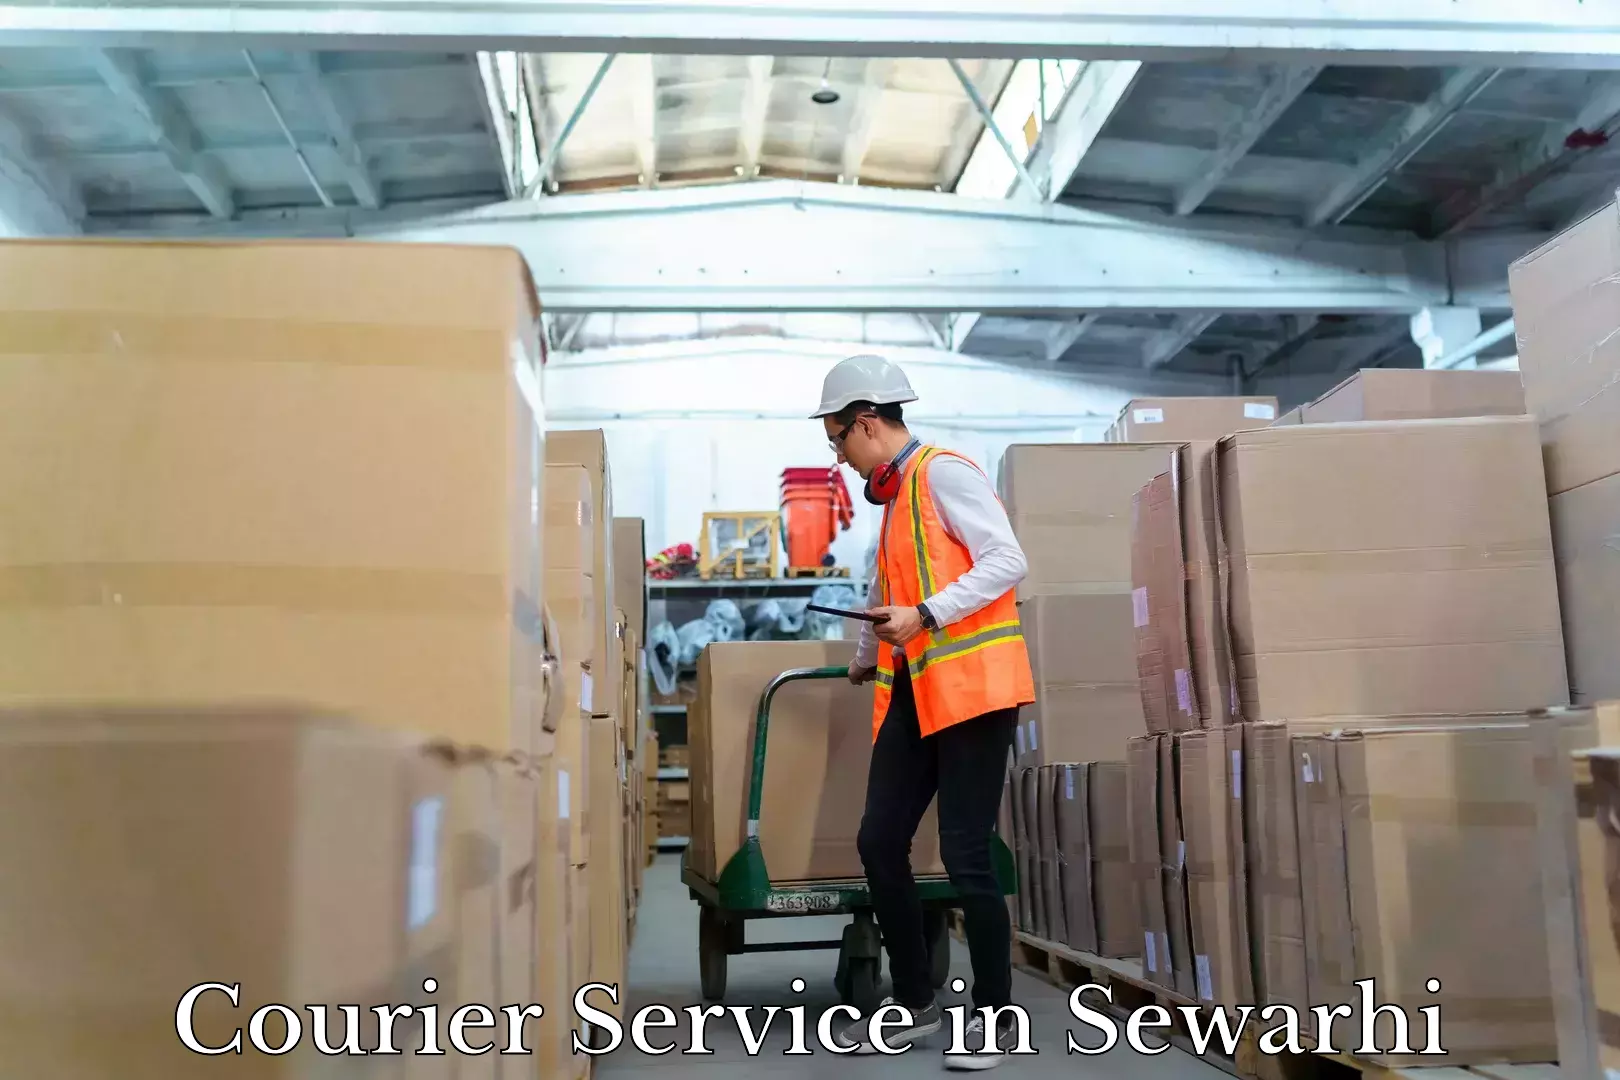 Efficient cargo handling in Sewarhi